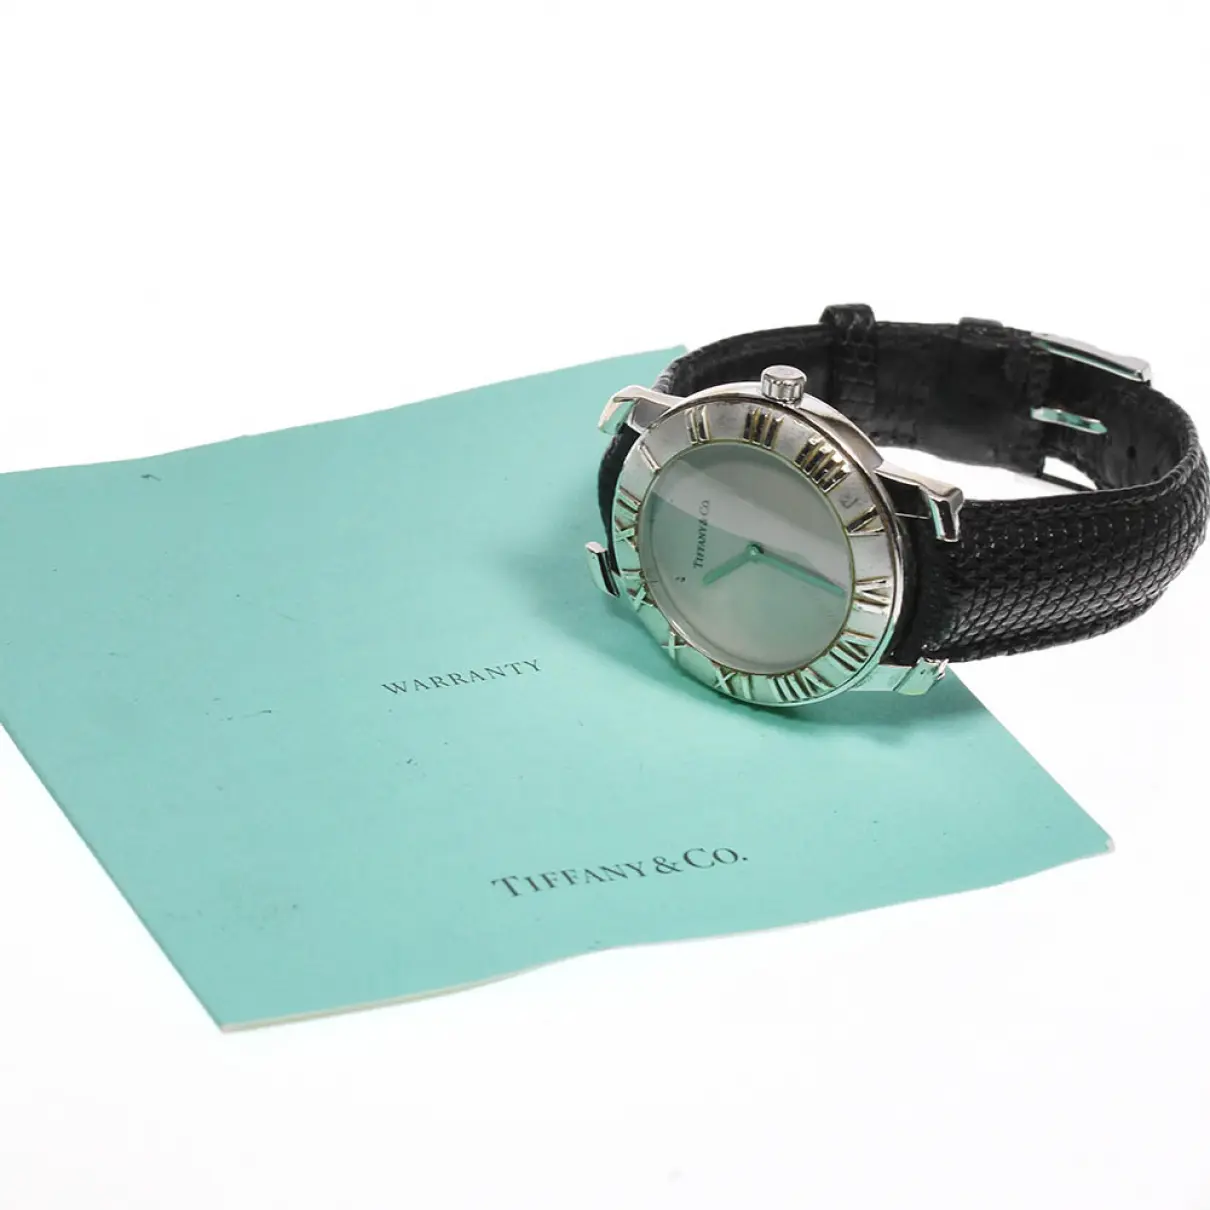 Buy Tiffany & Co Watch online